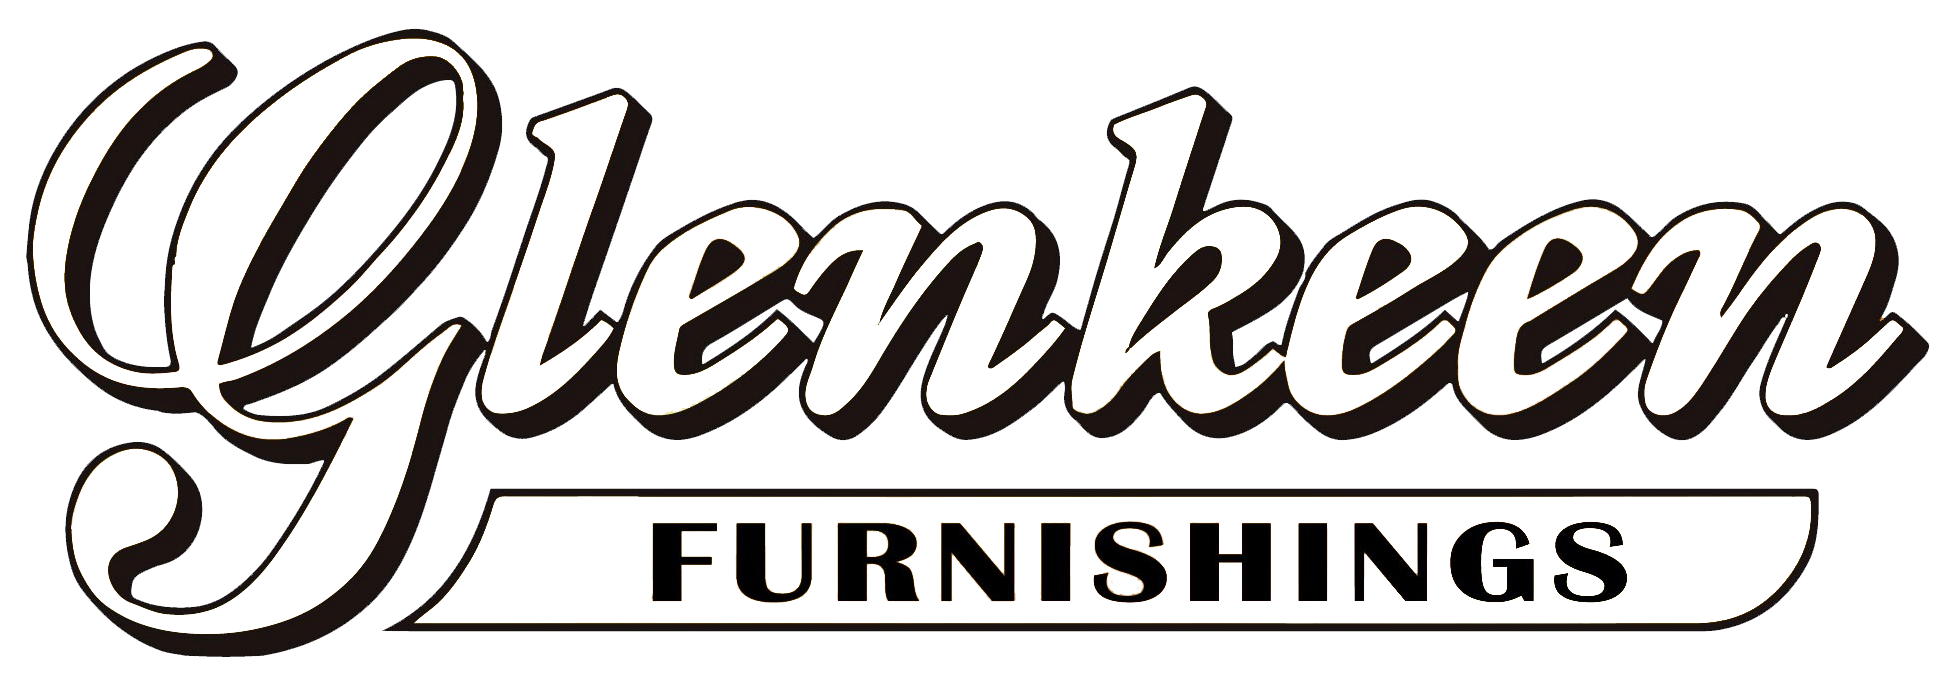 Glenkeen furnishings